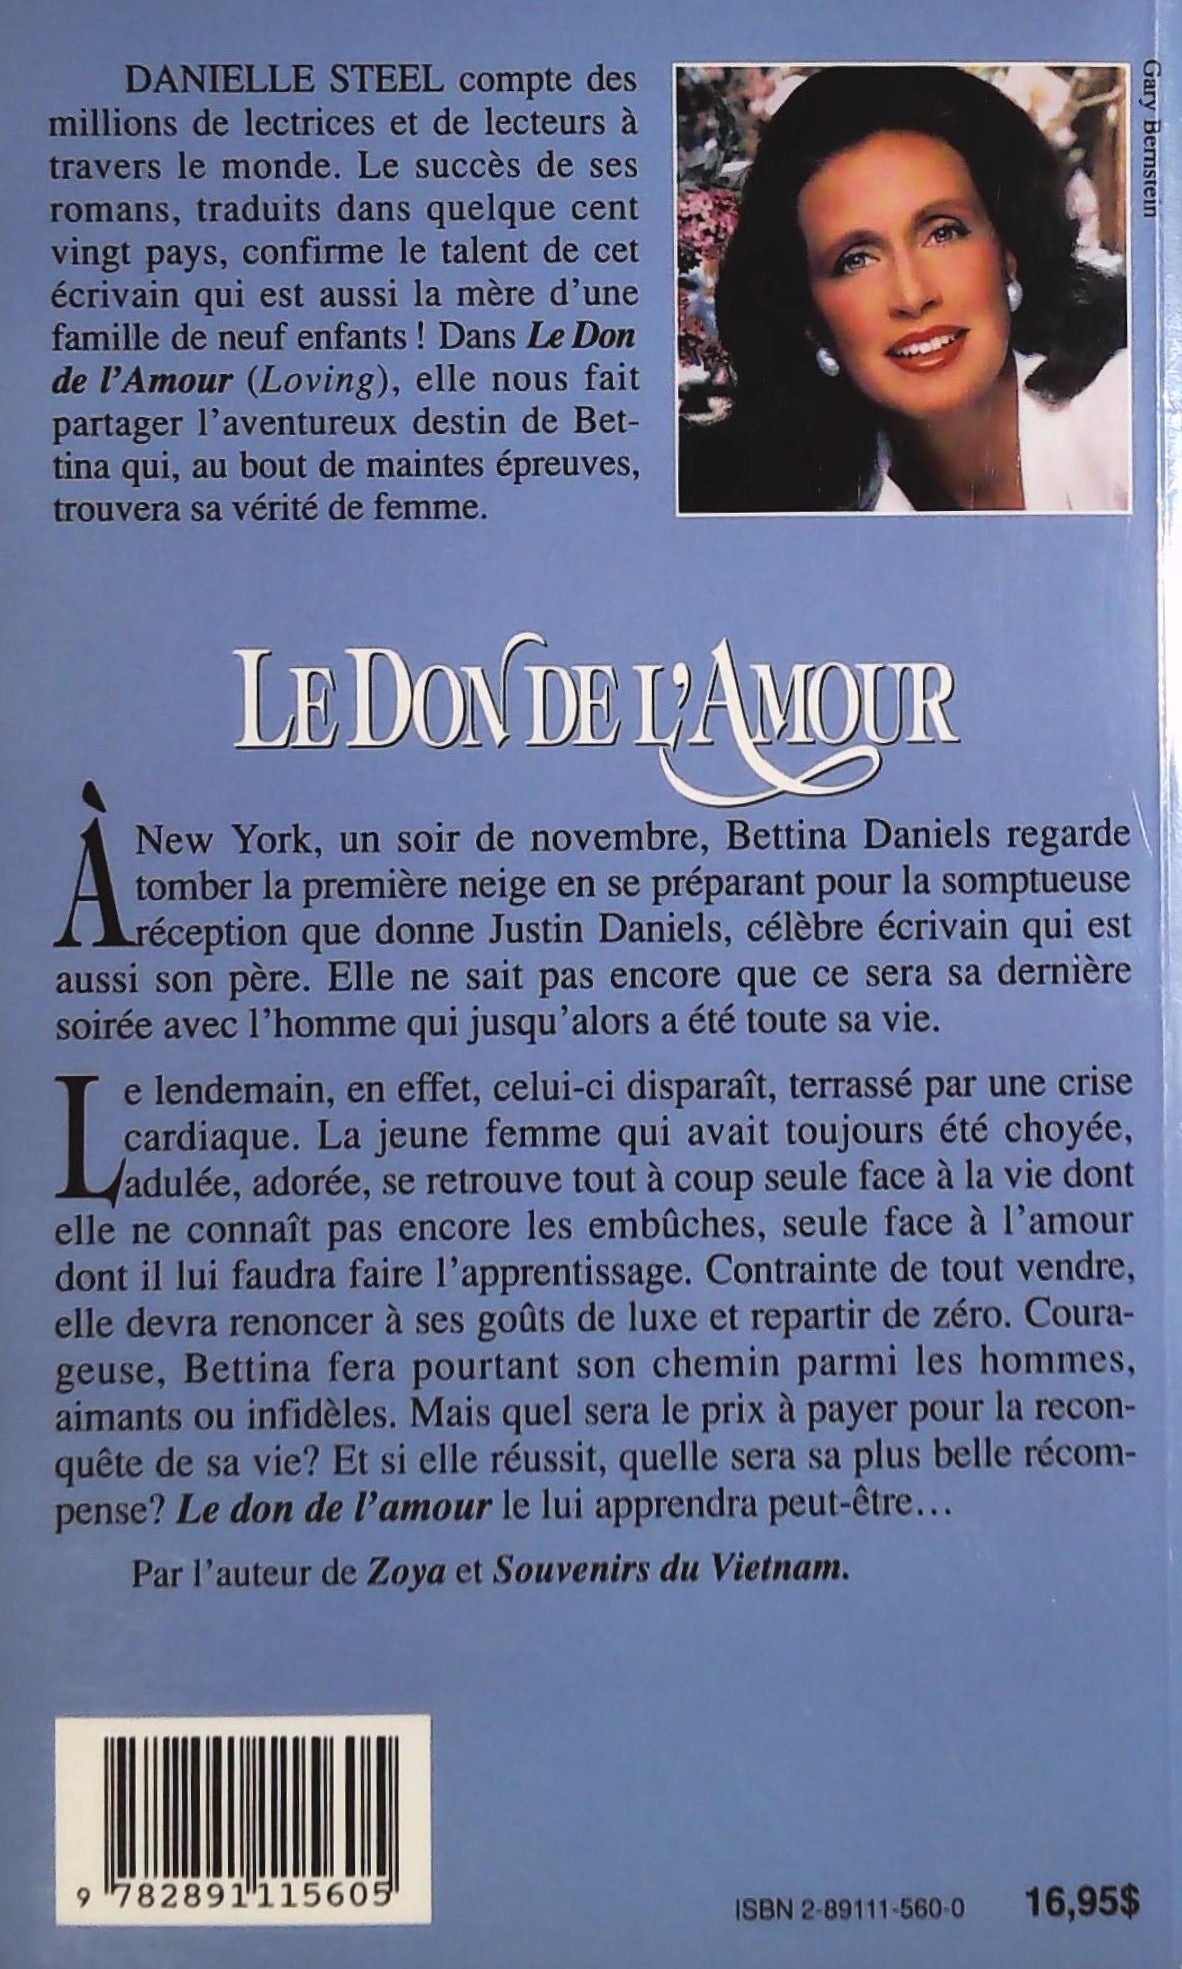 Le don de l'amour (Danielle Steel)